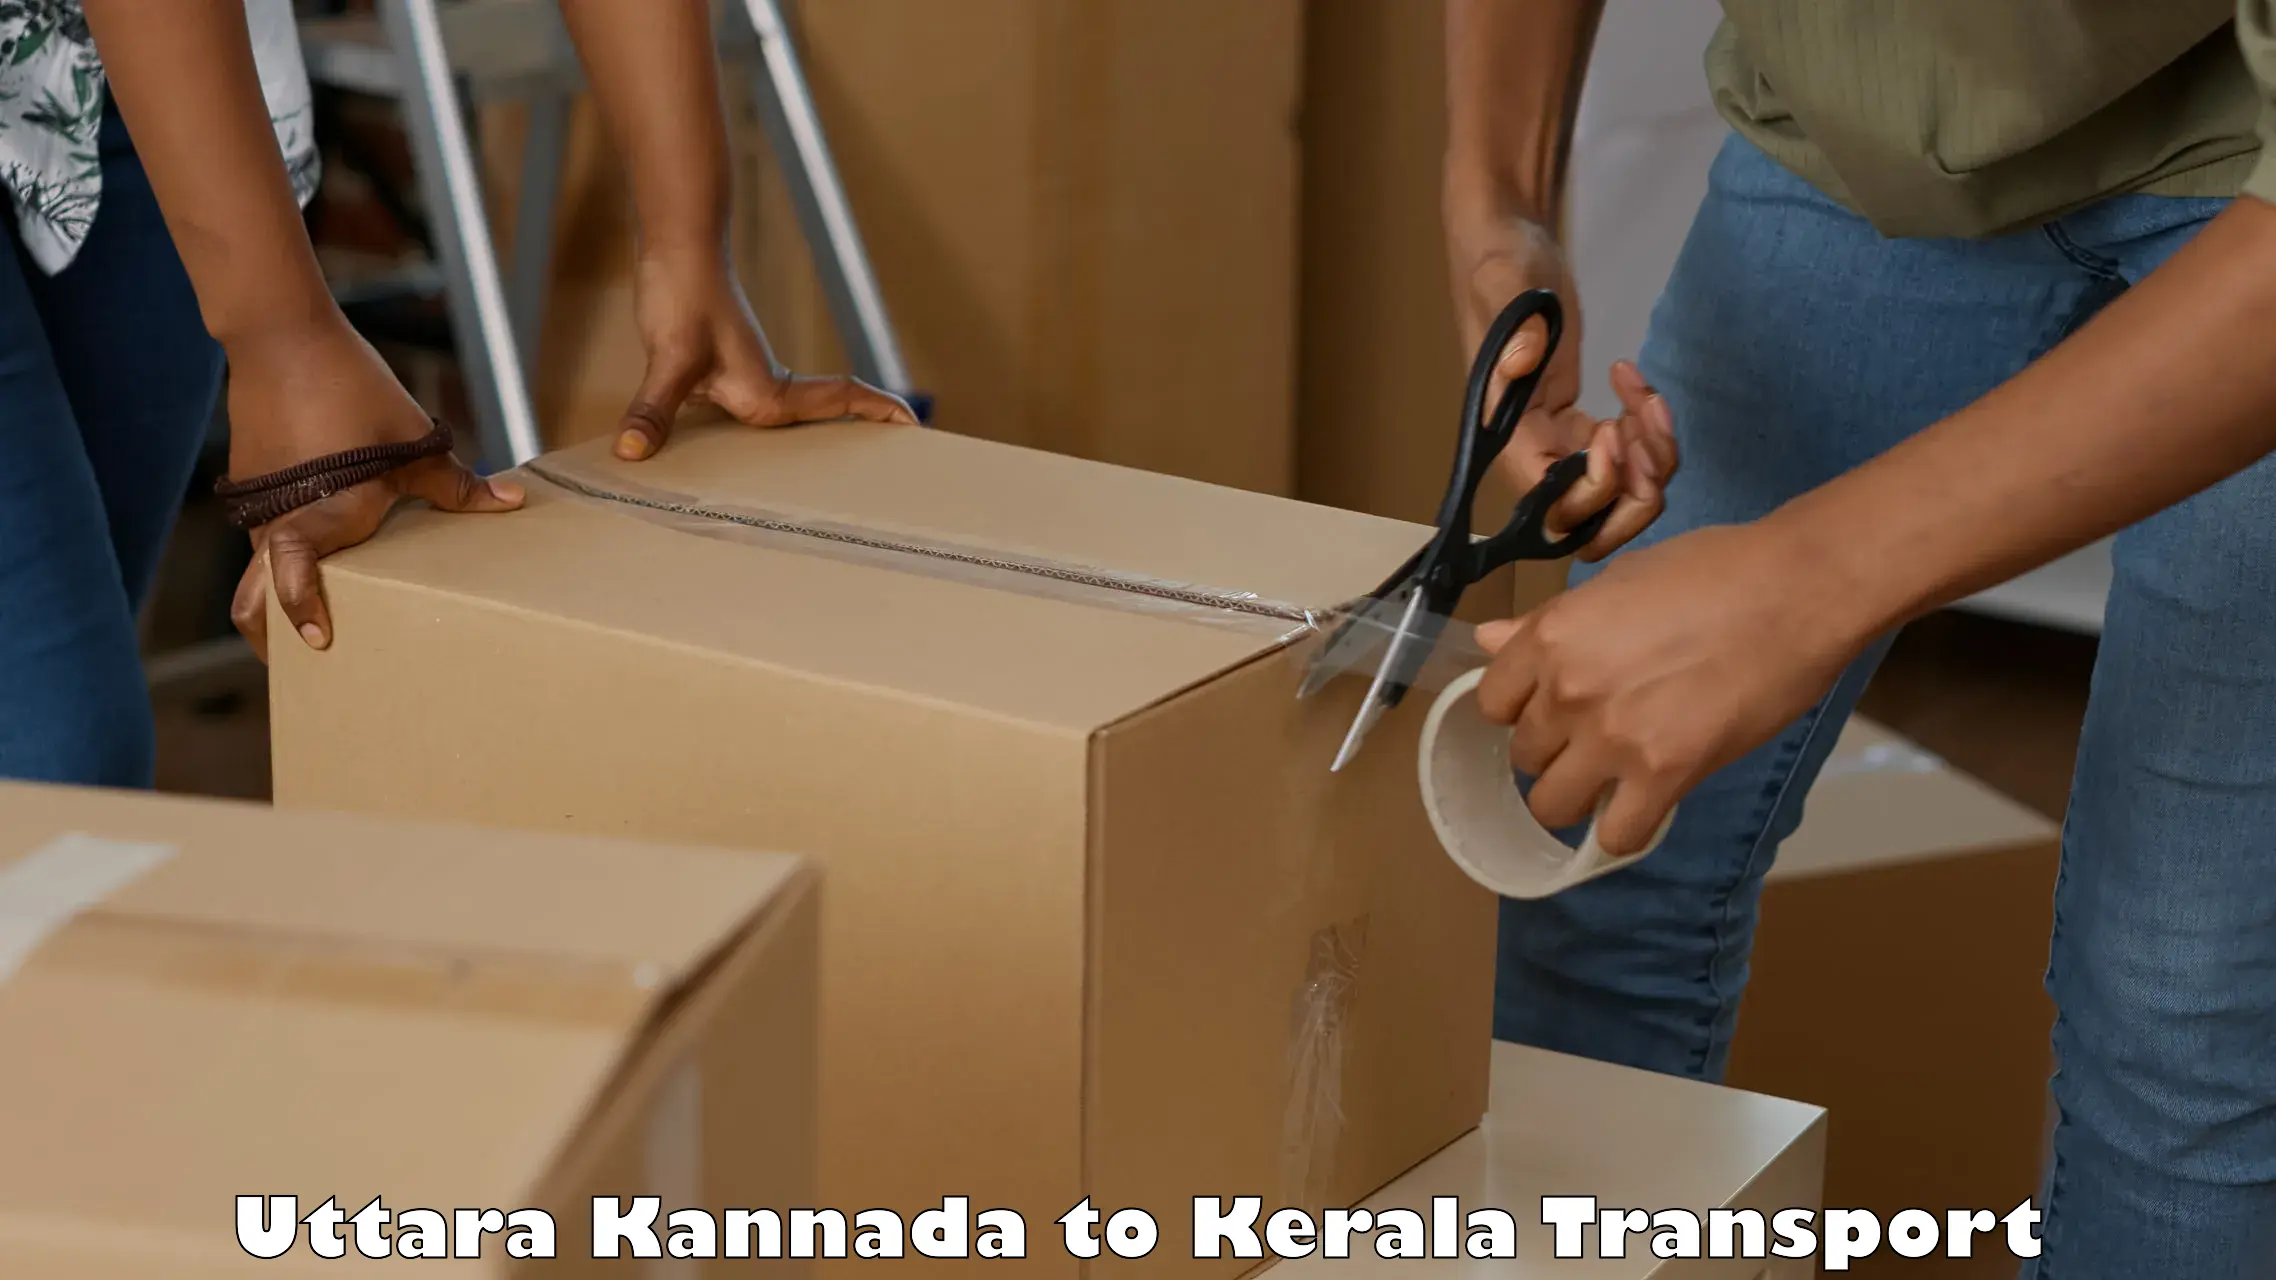 India truck logistics services Uttara Kannada to Kalpetta